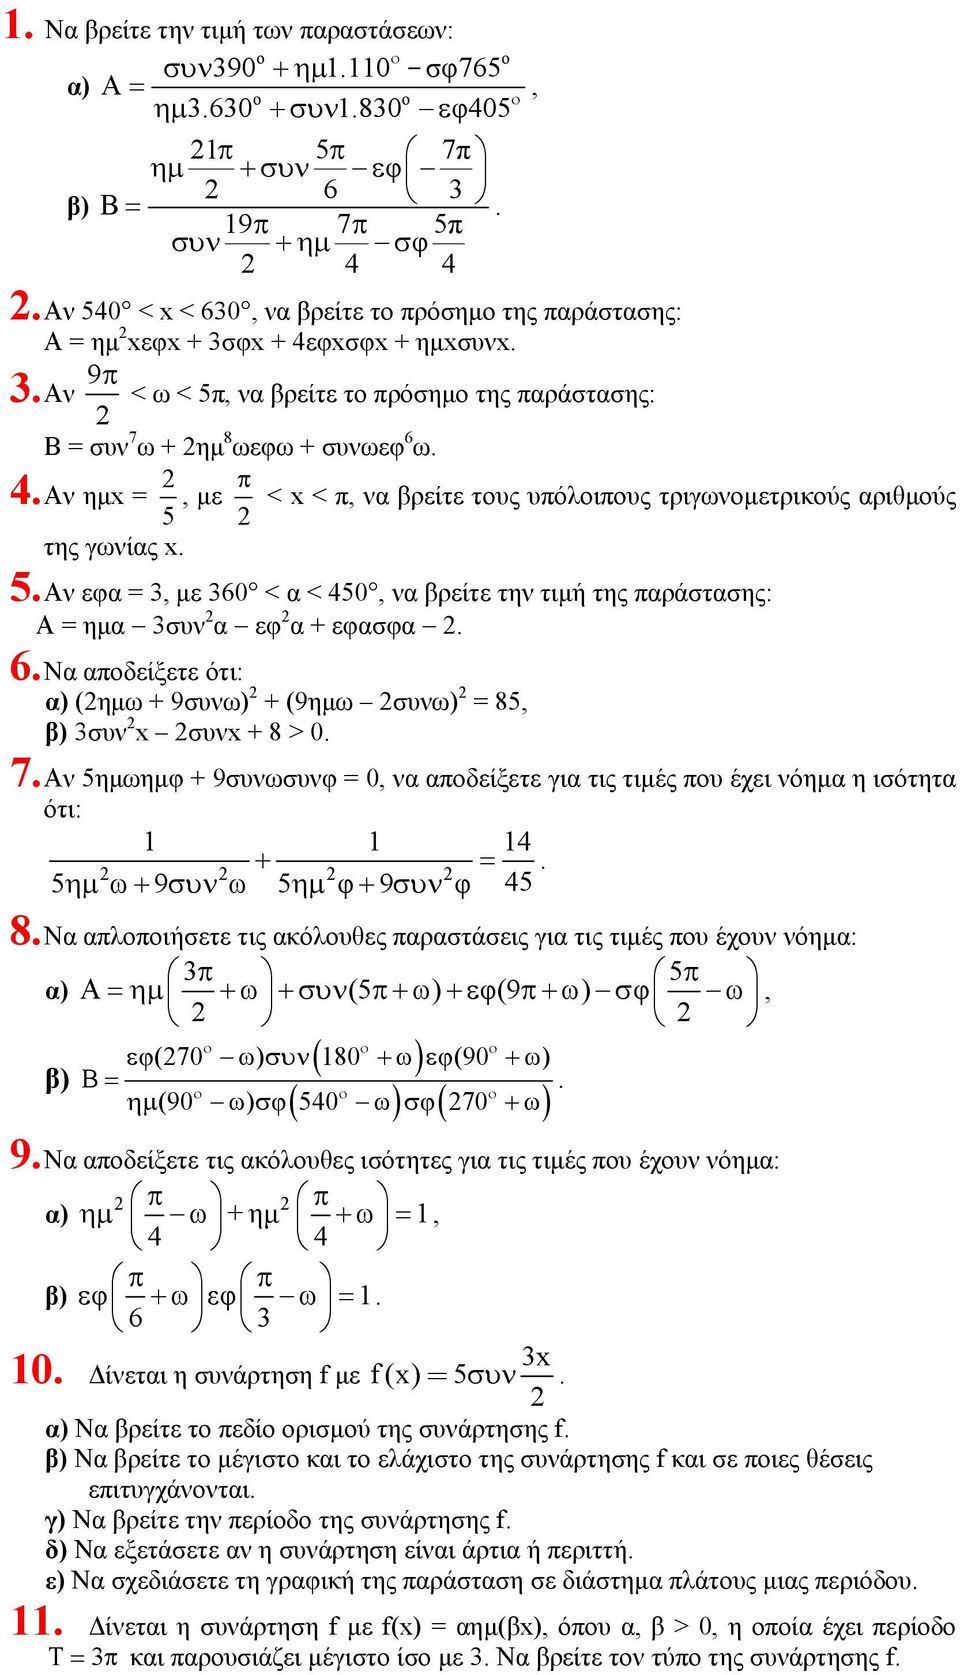 µε 0 < α < 450, να βρείτε την τιµή της αράστασης: Α = ηµα συν α εφ α + εφασφα Να αδείξετε ότι: α) (ηµω + 9συνω) + (9ηµω συνω) = 85, β) συν x συνx + 8 > 0 7 Αν 5ηµωηµφ + 9συνωσυνφ = 0, να αδείξετε για